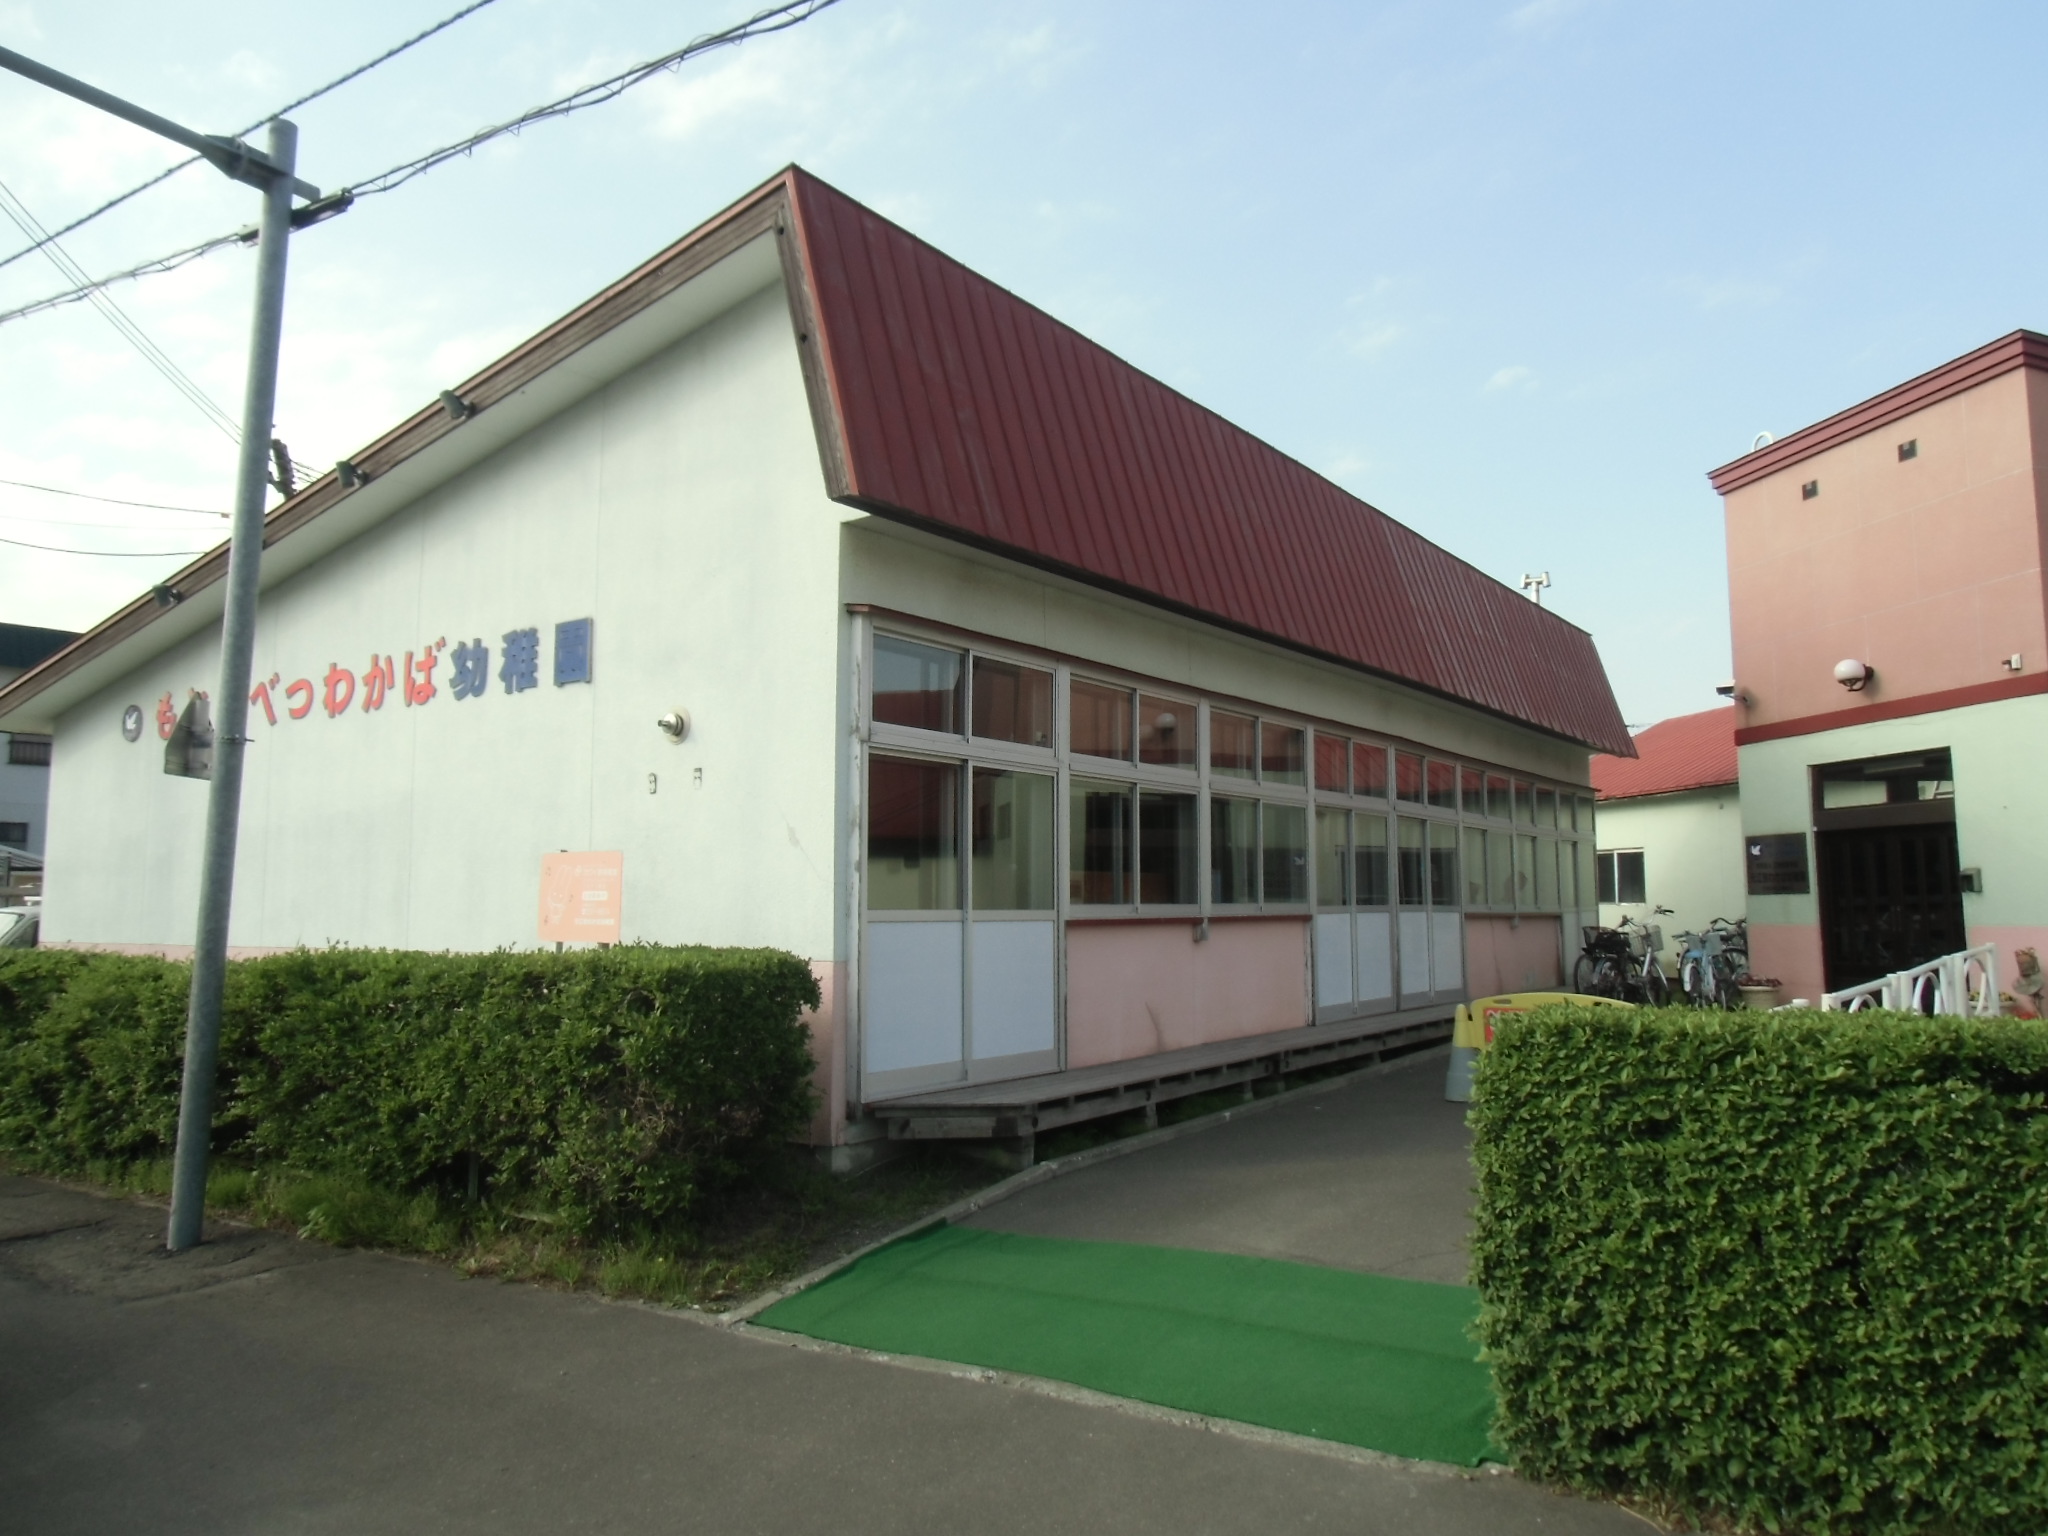 kindergarten ・ Nursery. Motoebetsu Wakaba kindergarten (kindergarten ・ 422m to the nursery)